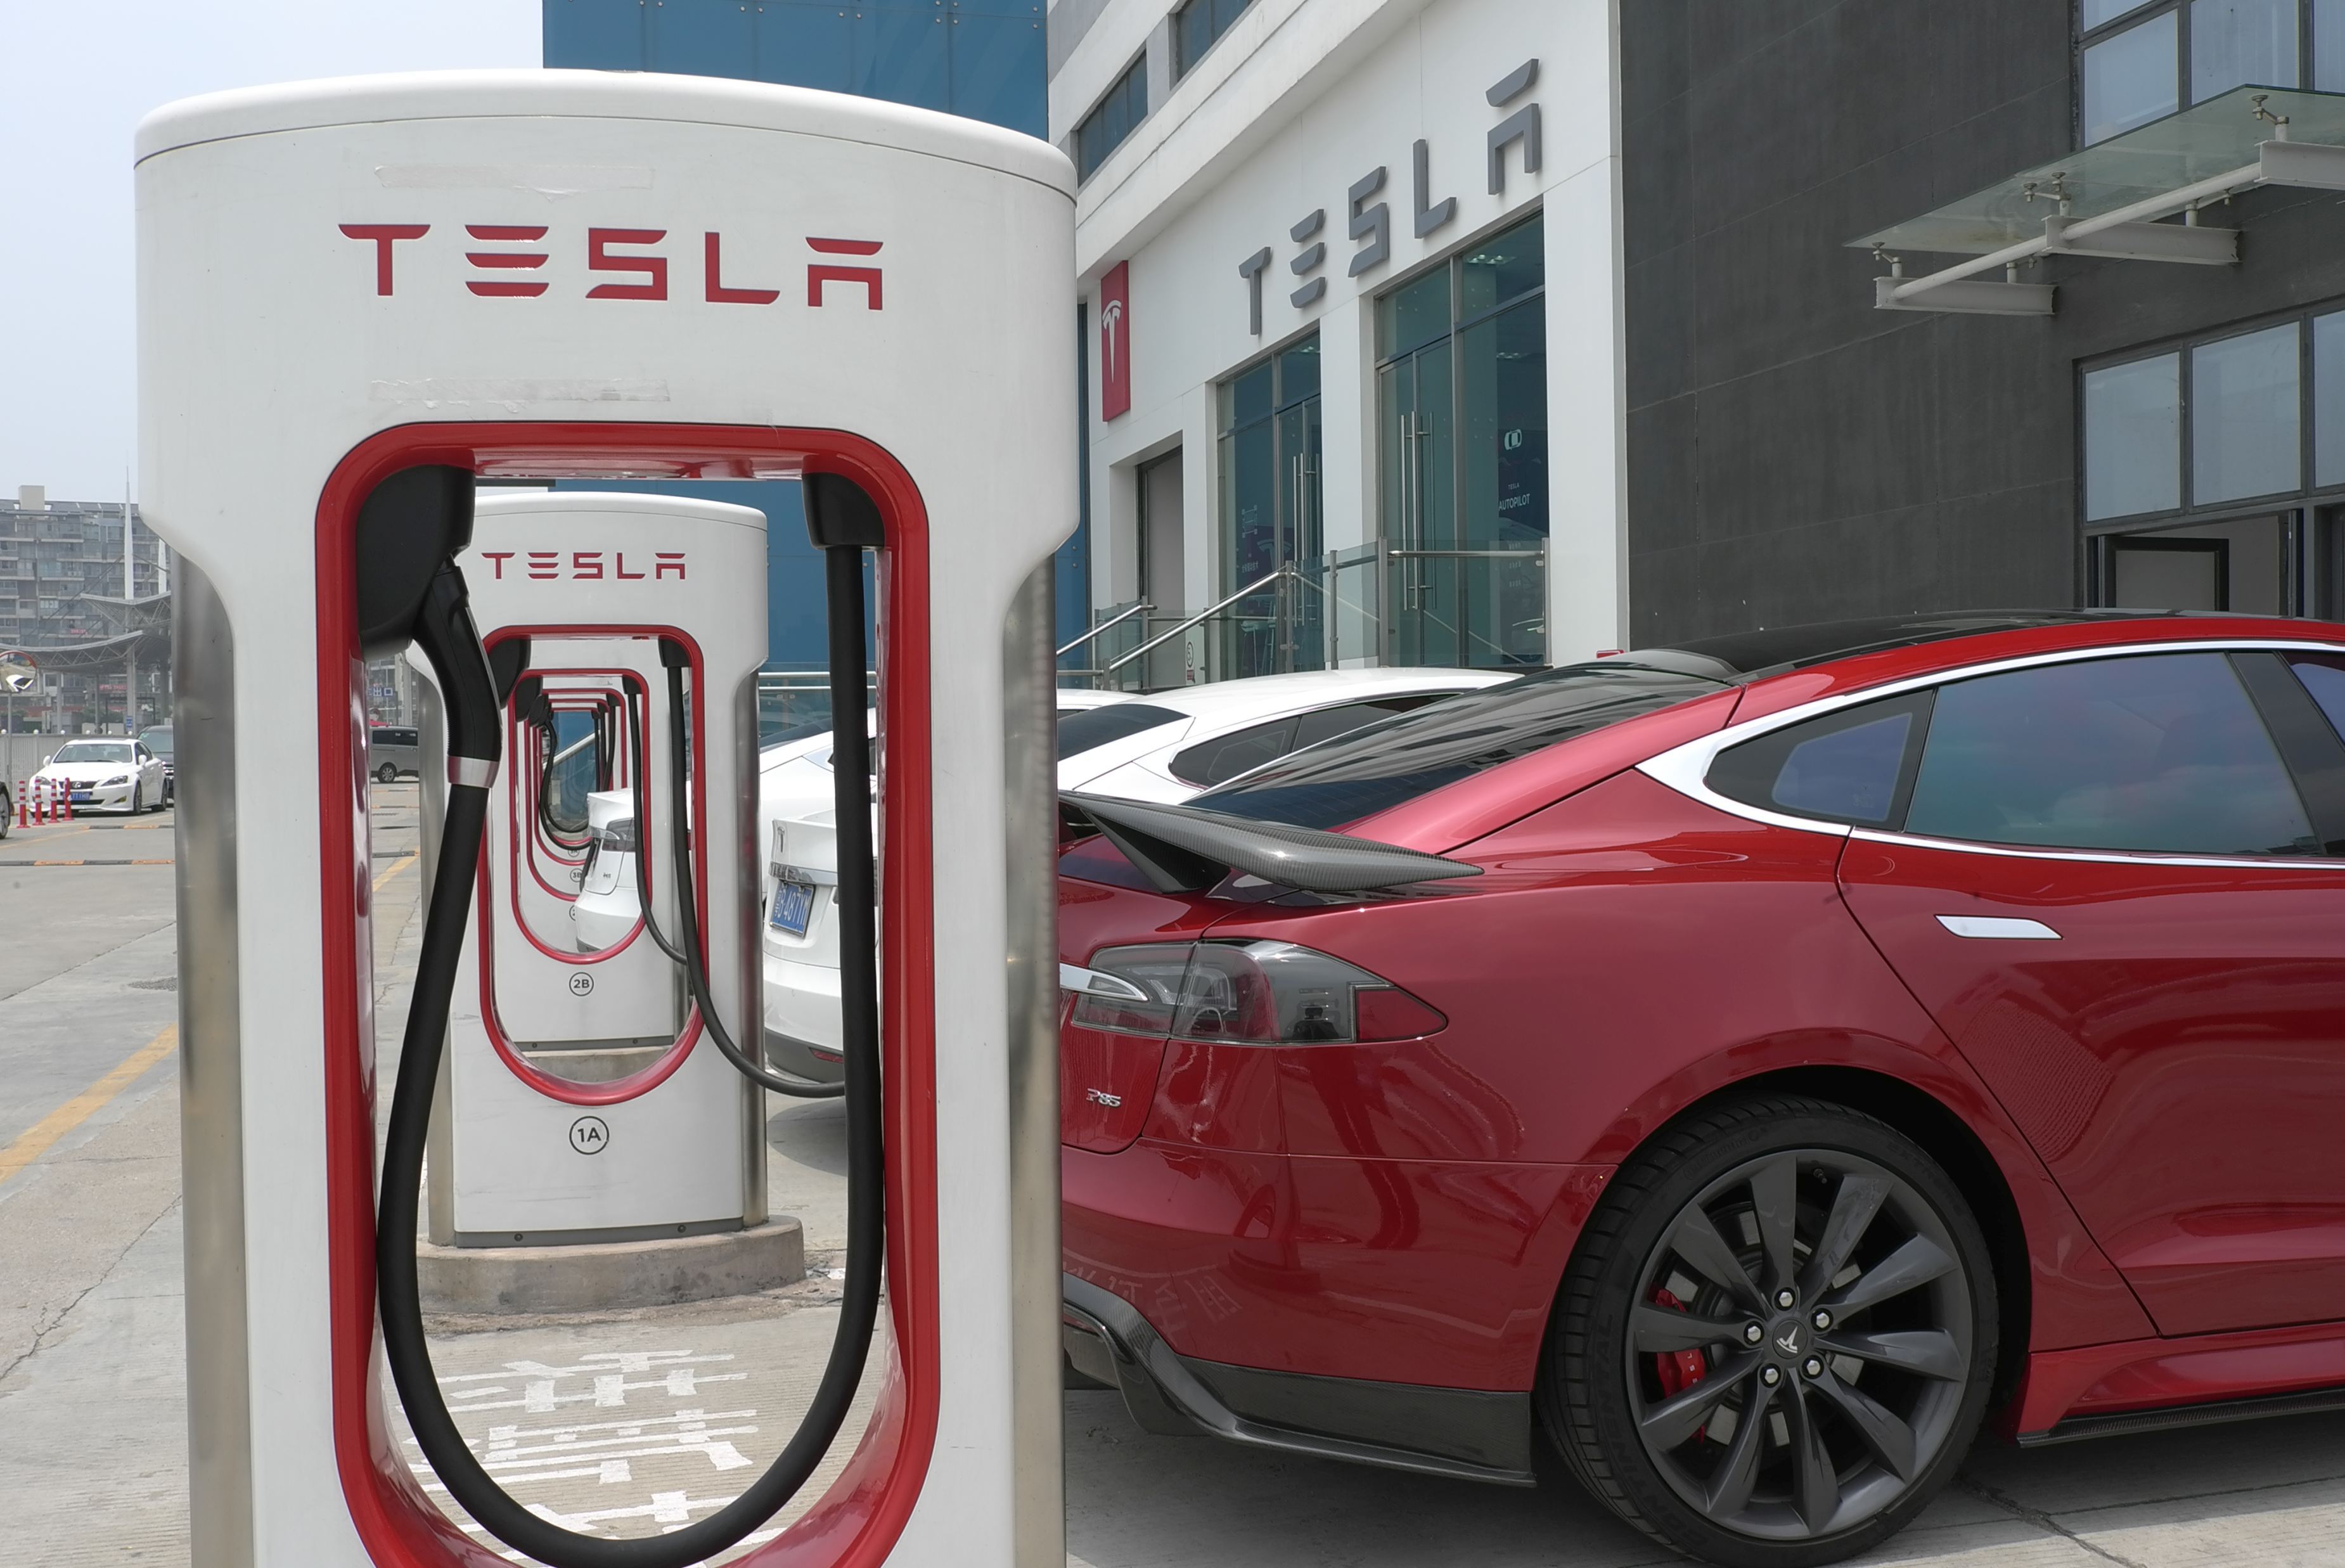 Succesul Tesla în China: Producătorul auto a înregistrat vânzări de peste 3,1 miliarde de dolari în piaţa chineză în T3, aproape jumătate faţă de vânzările companiei pe piaţa din SUA